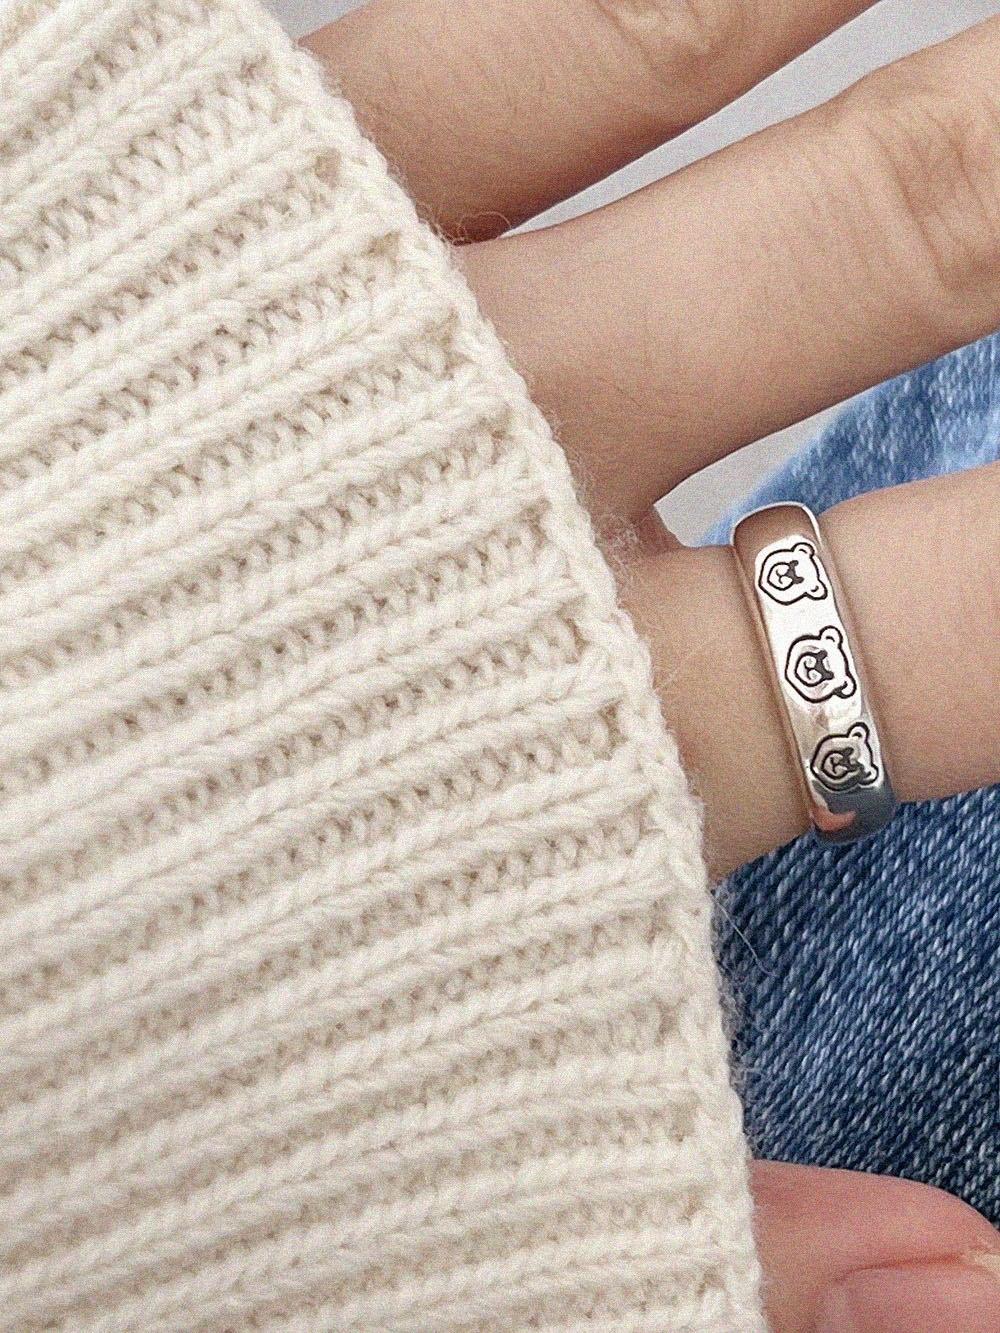 [925 Silver]クマ3匹ボールドリング ring The Klang 